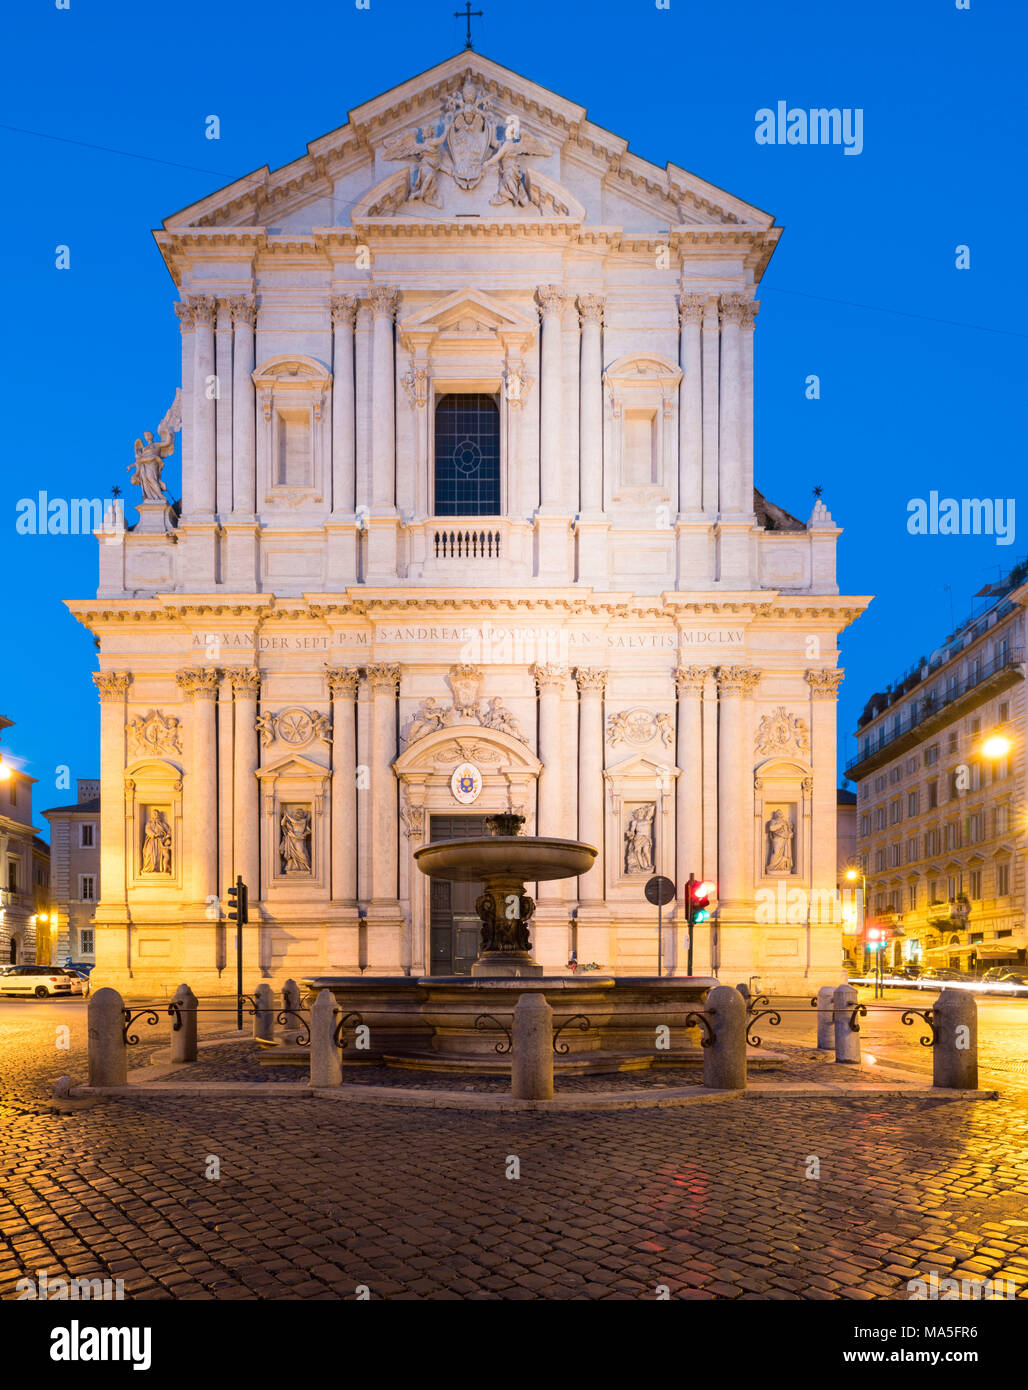 Italy, Lazio Region, Rome. Church of S. Andrea della Valle at dawn Stock Photo